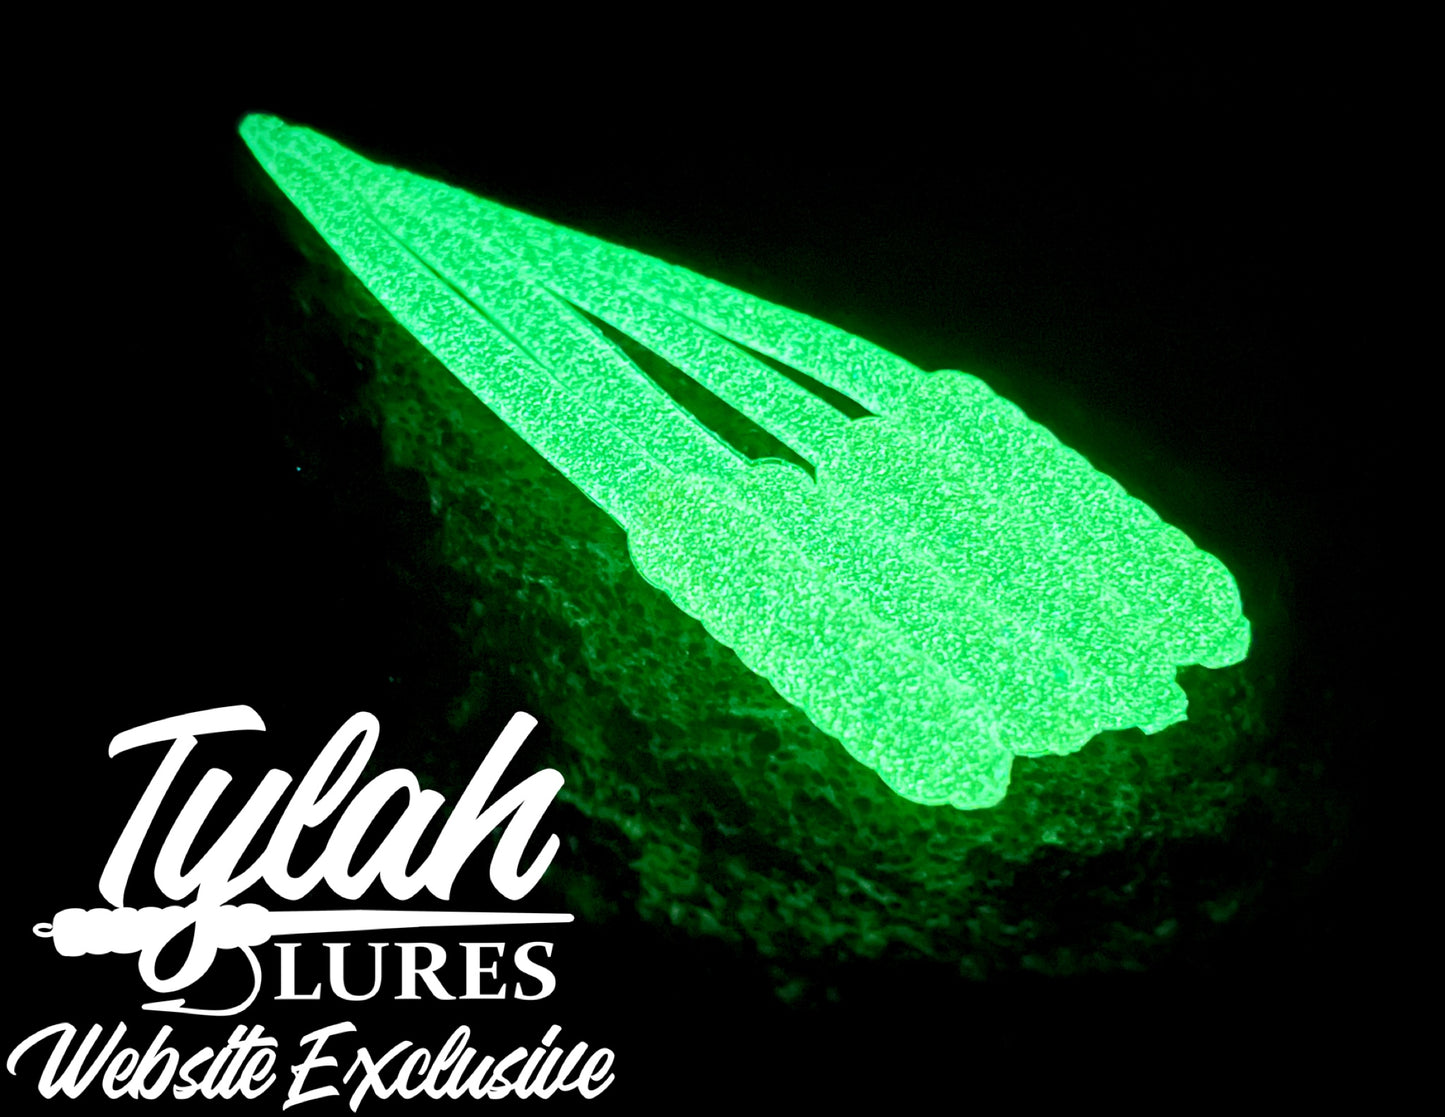 TylahLures Website Exclusive 3in Glow